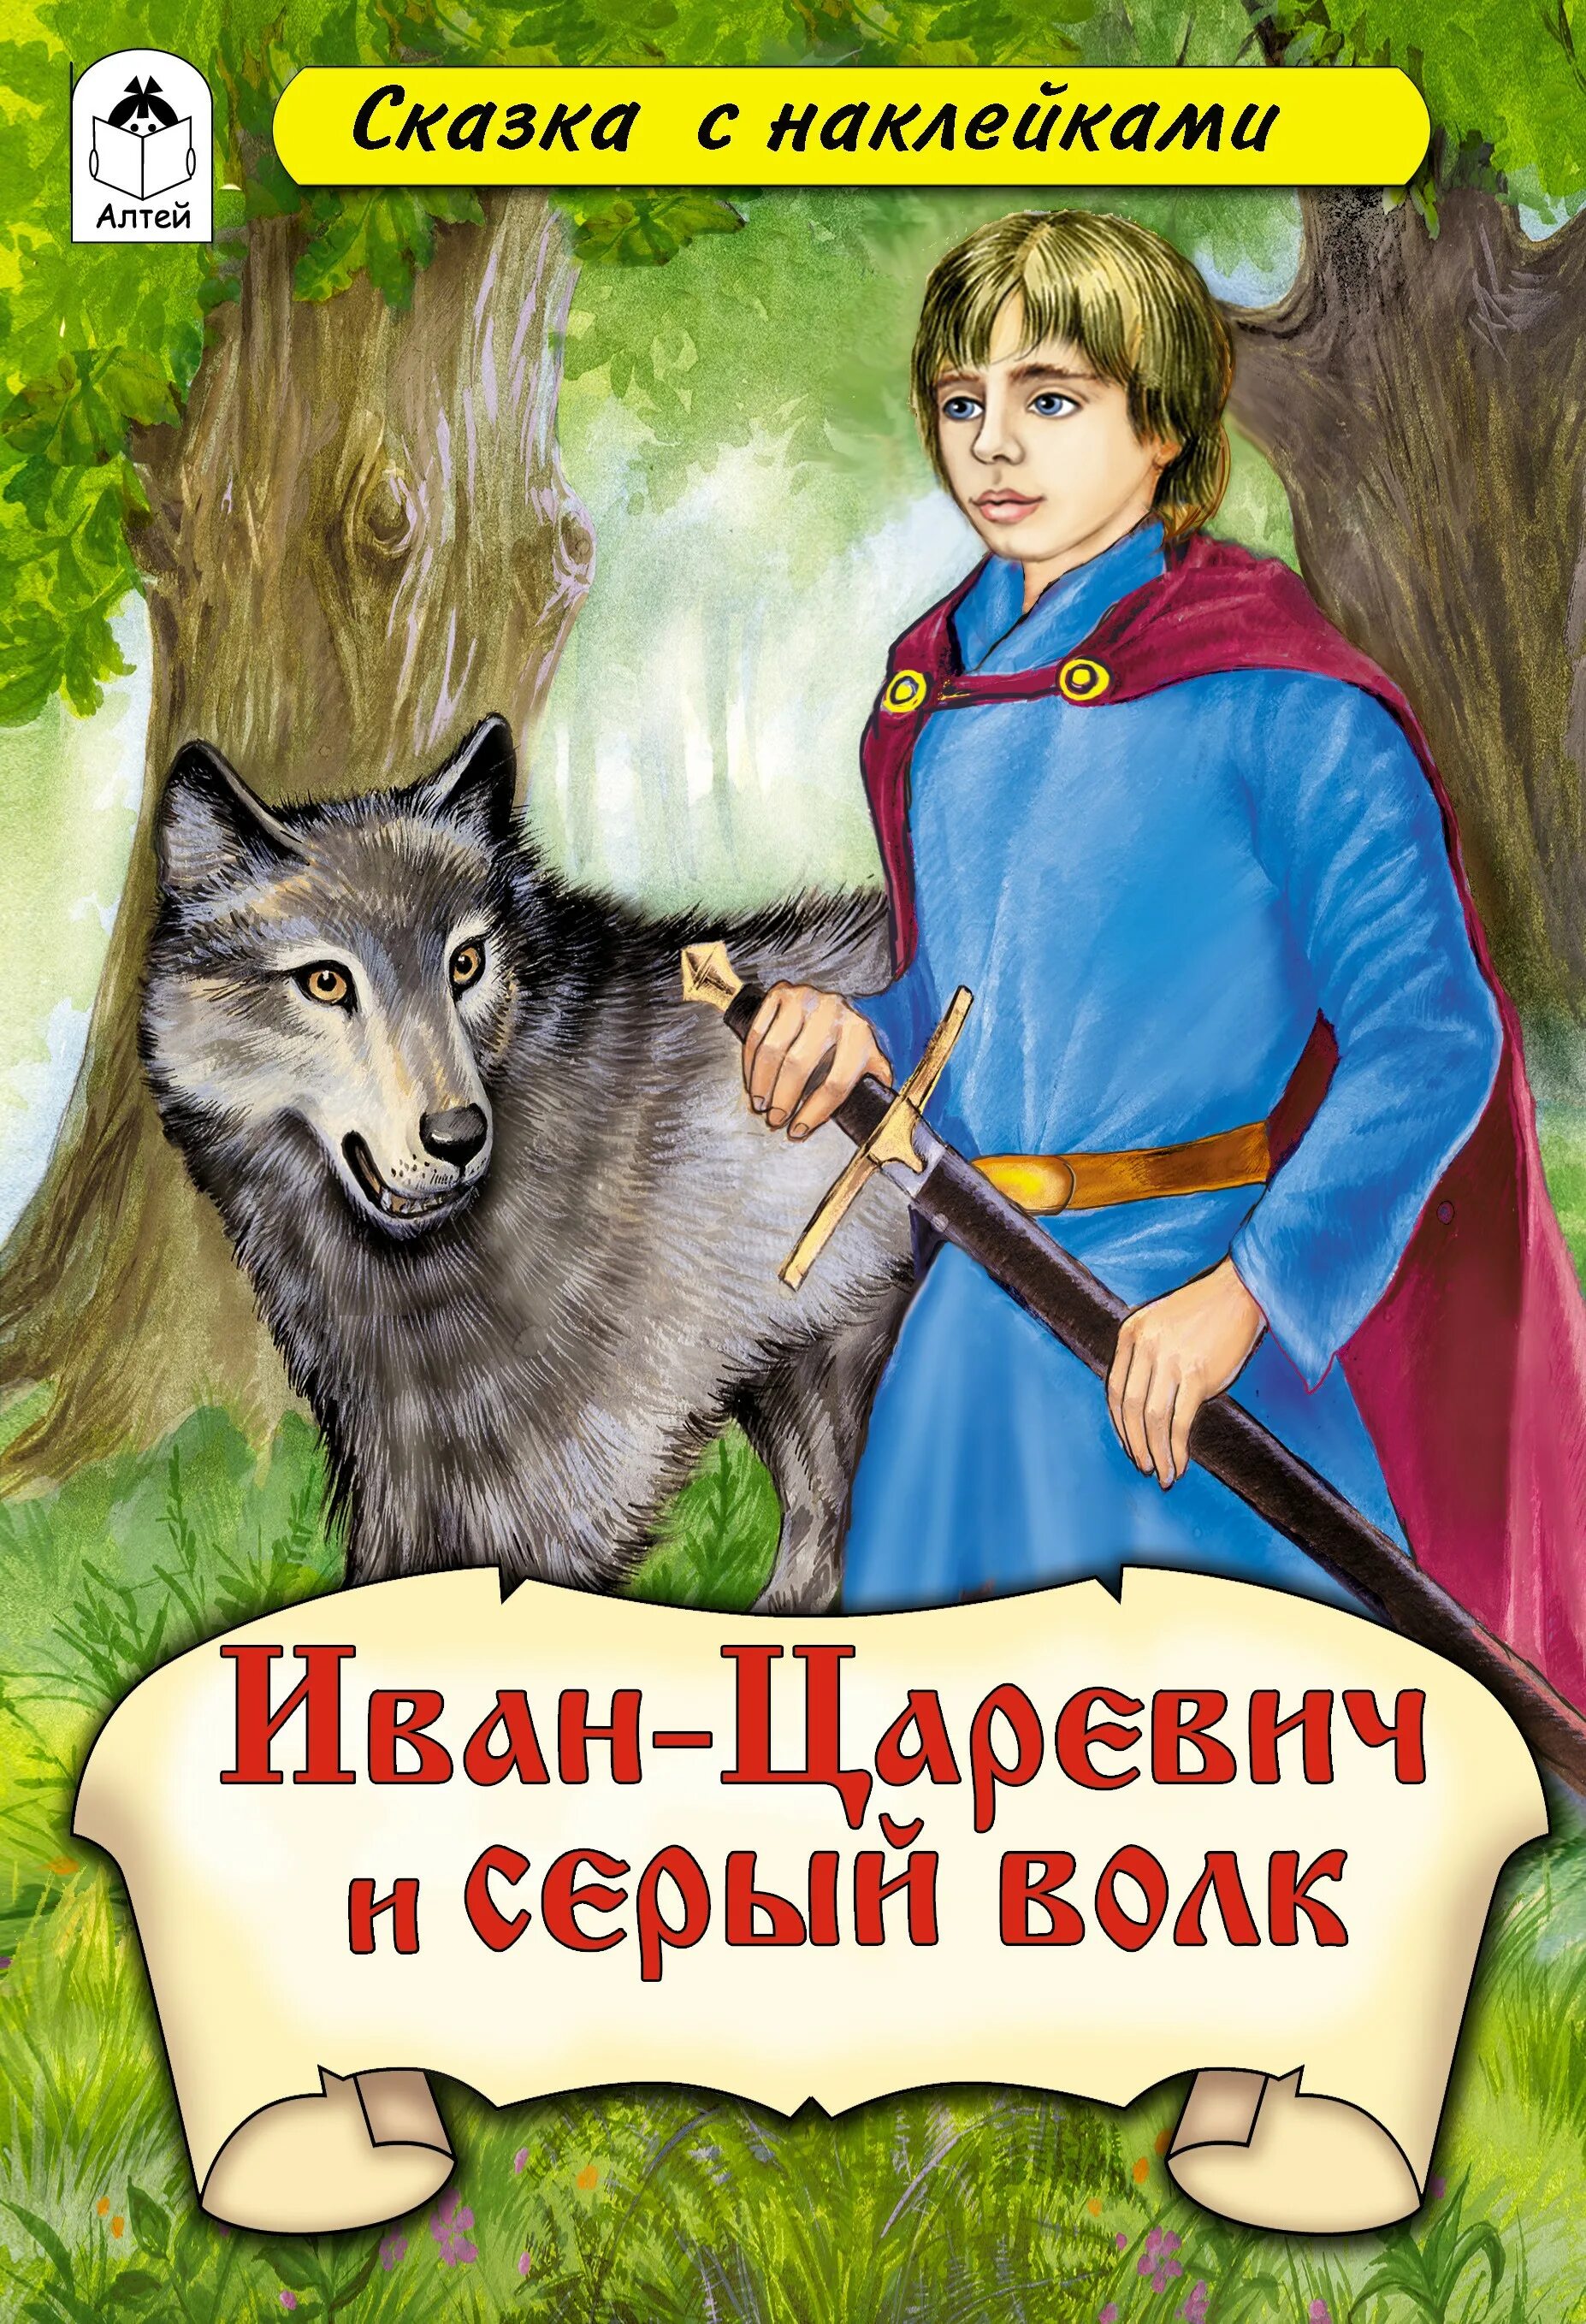 Книга Инан цараревичь и серый волк.